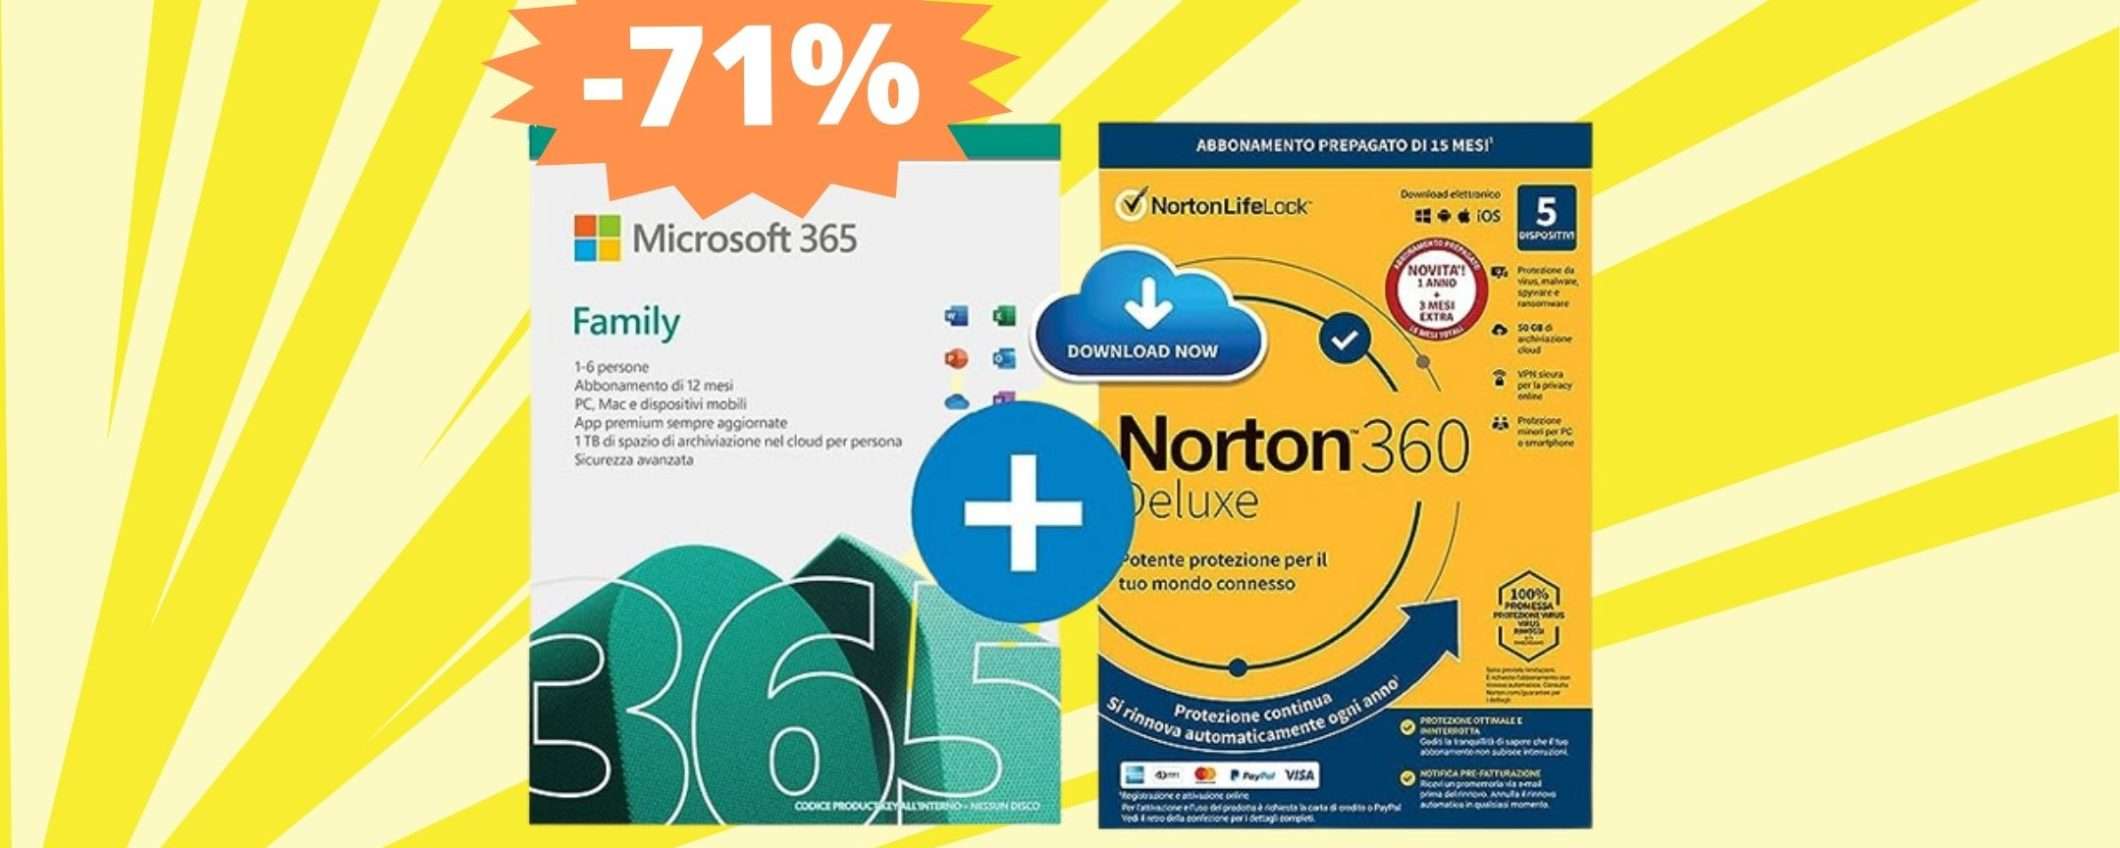 Microsoft 365 Family + Norton 360 Deluxe: AFFARE su Amazon (-71%)